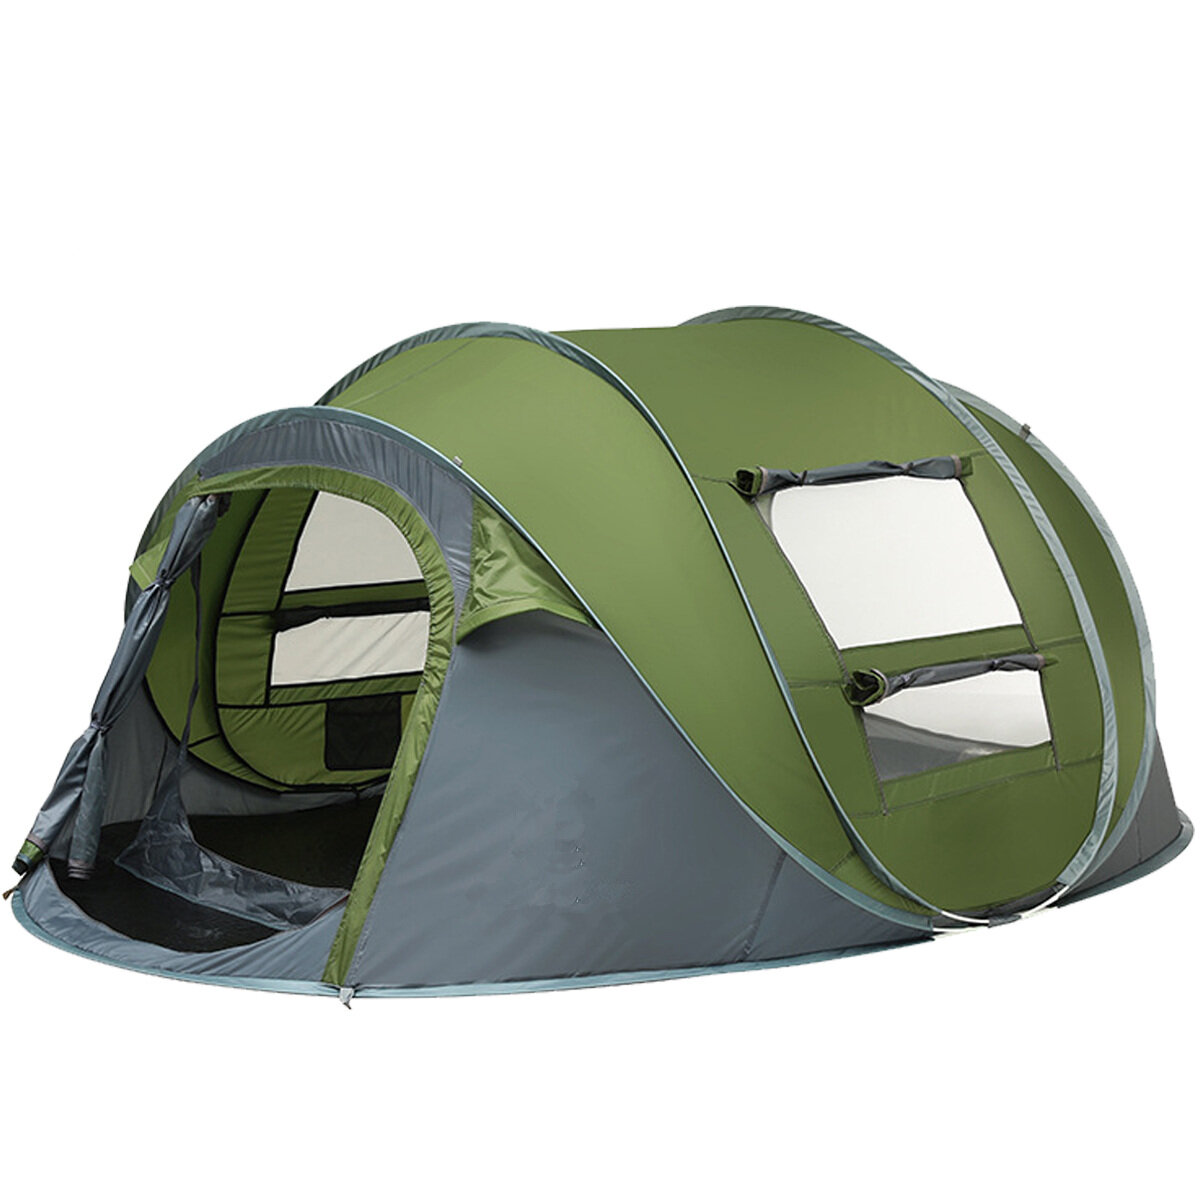 Двухдверная палатка для кемпинга на 3-4/5-8 человек, автоматическая, водонепроницаемая, дышащая, с солнцезащитным тентом для активного отдыха на природе.